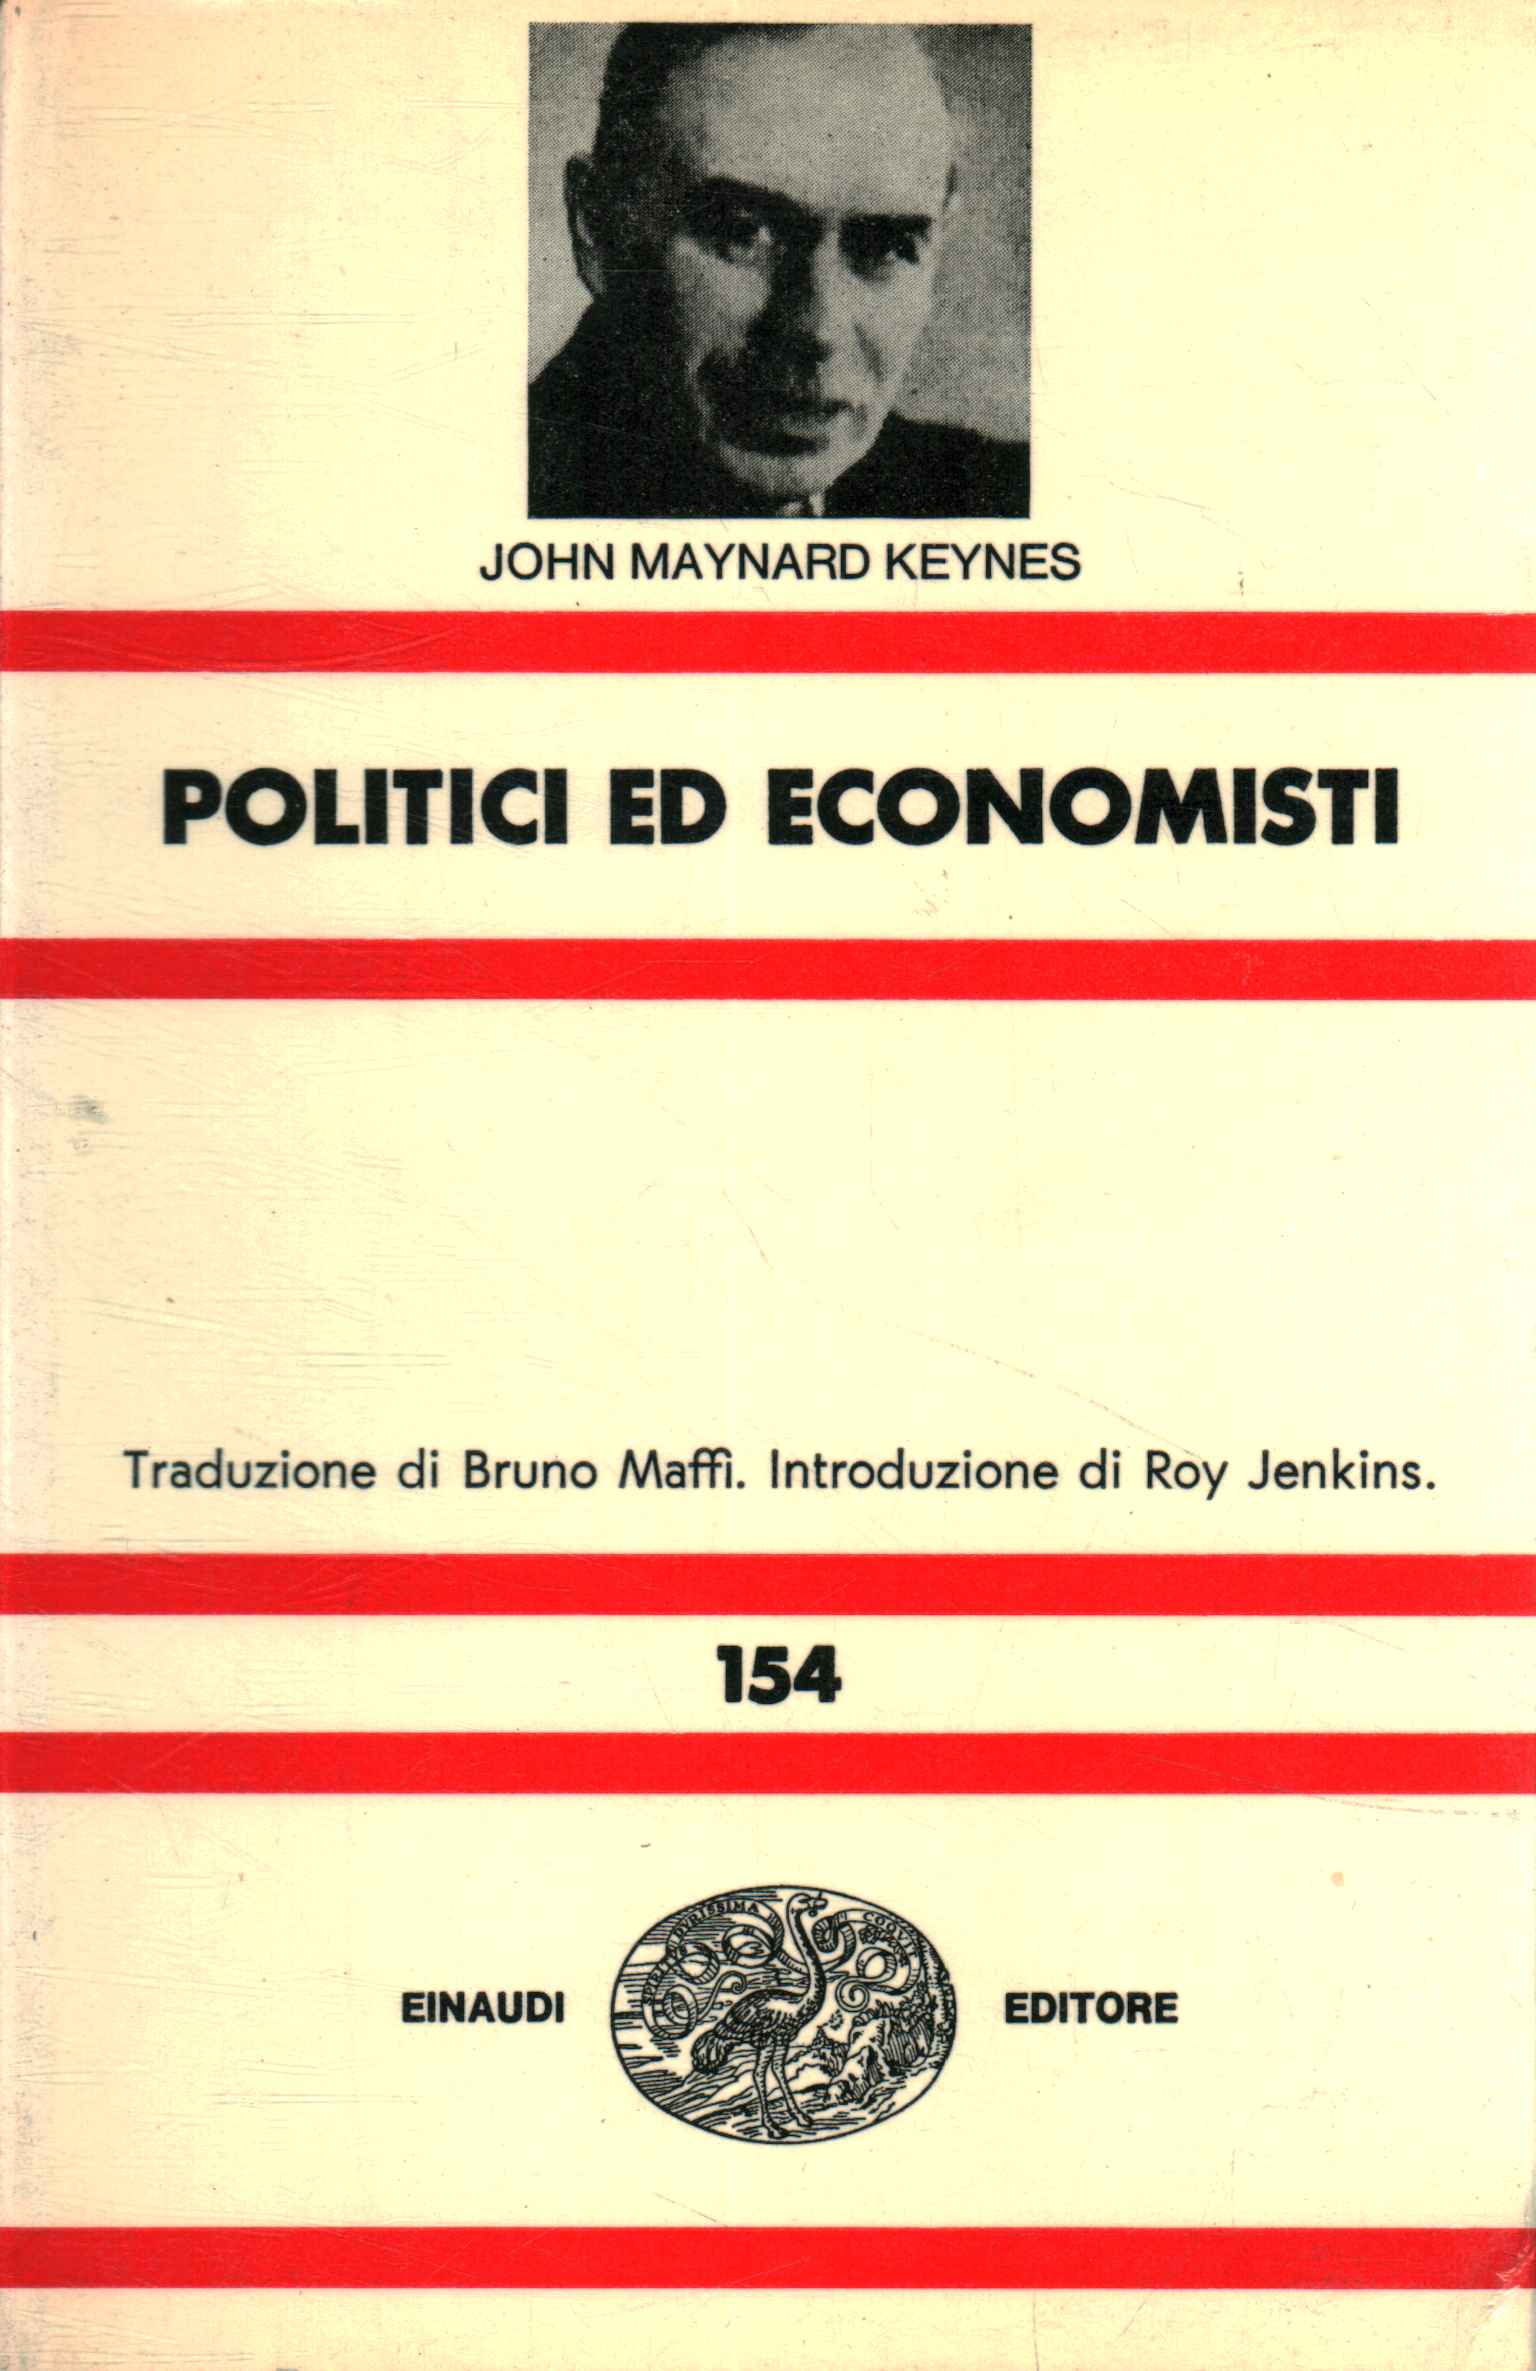 Politiker und Ökonomen